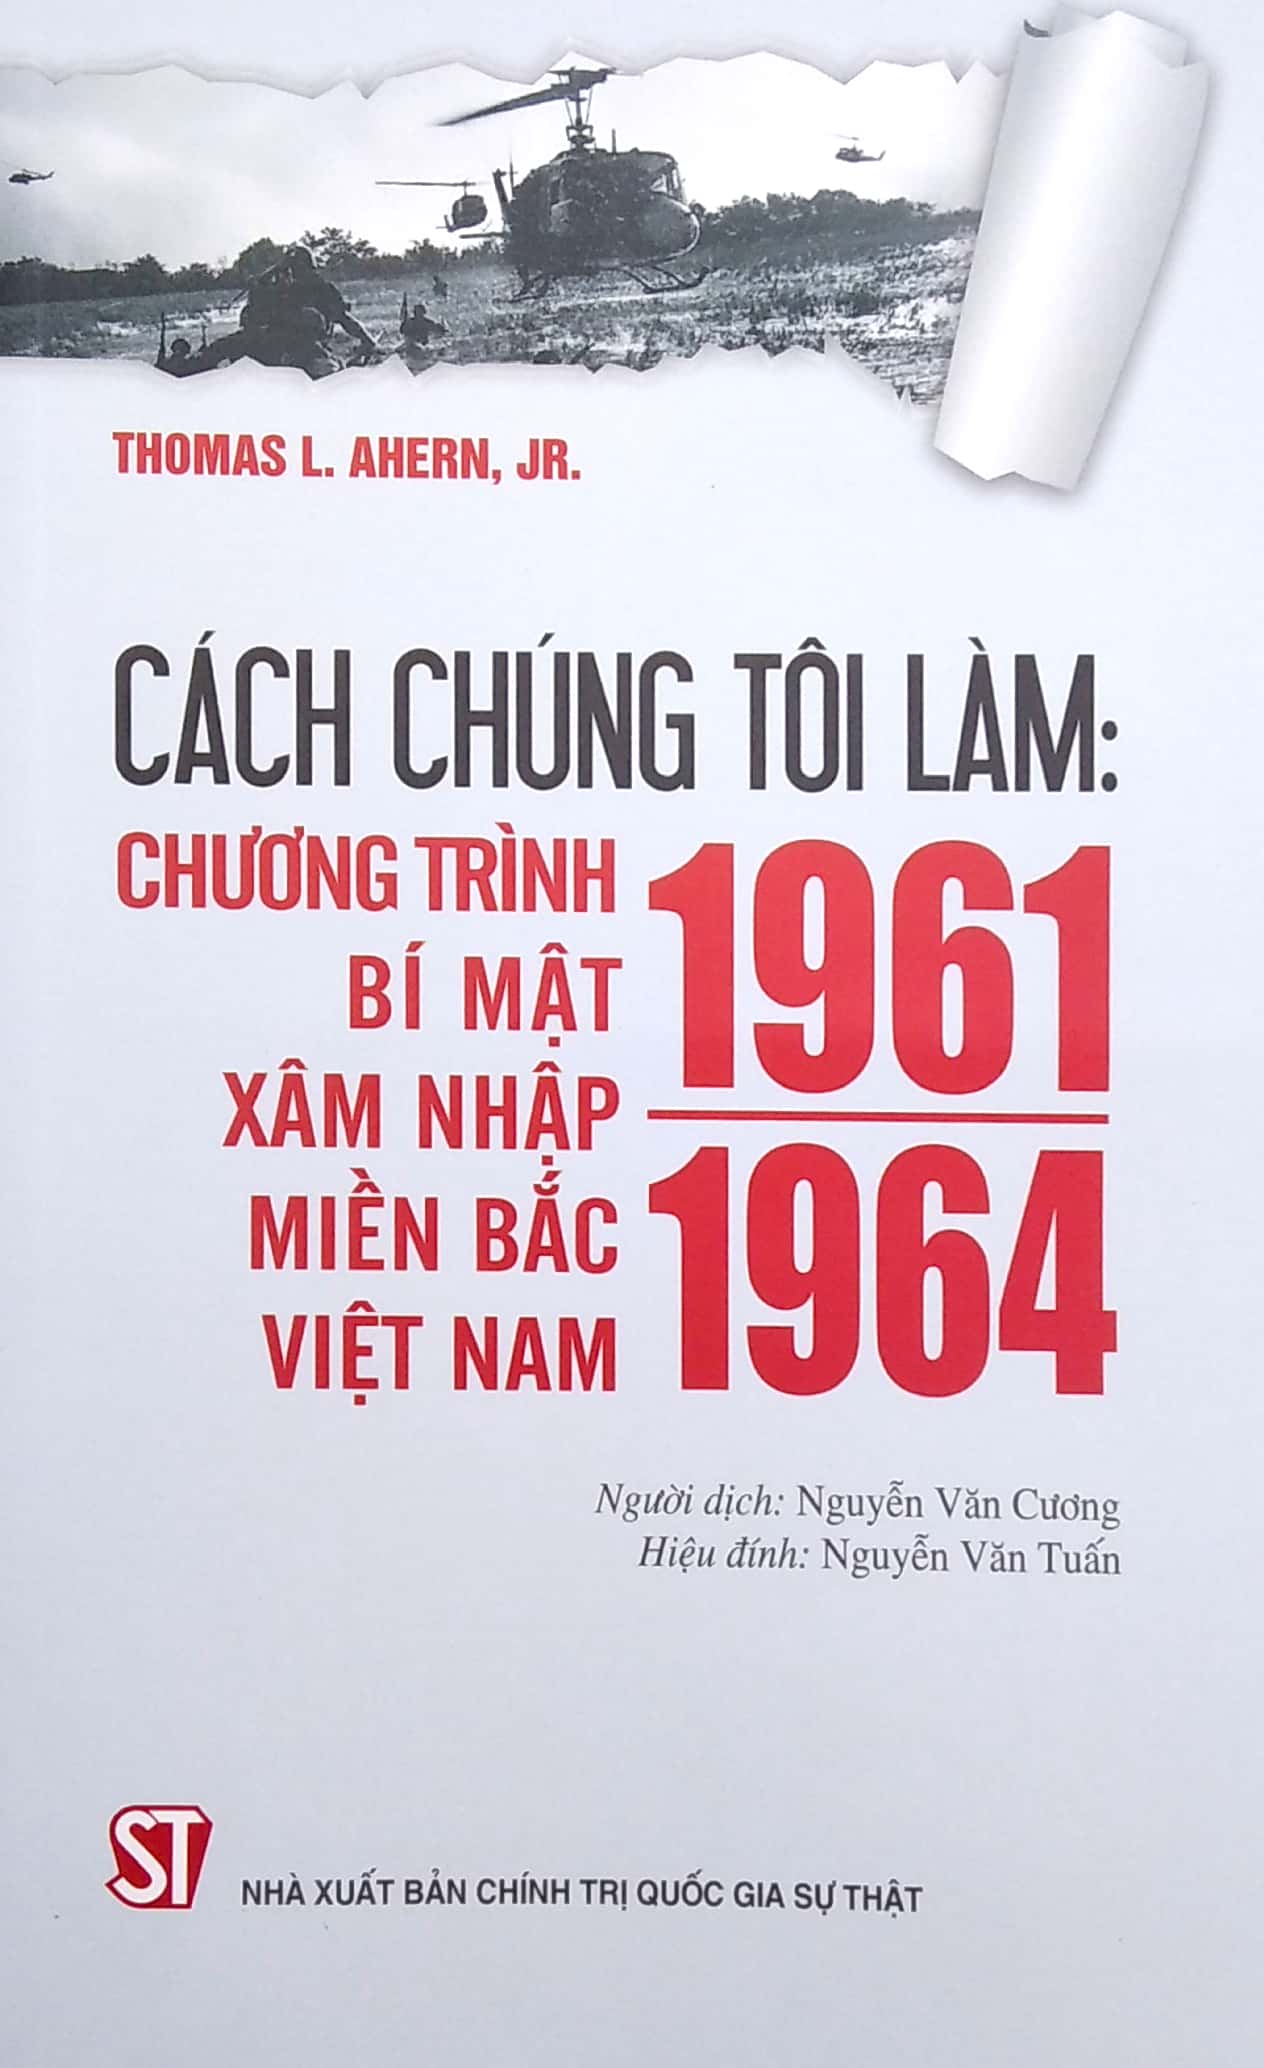 Cách Chúng Tôi Làm: Chương Trình Bí Mật Xâm Nhập Miền Bắc Việt Nam 1961 - 1964 PDF